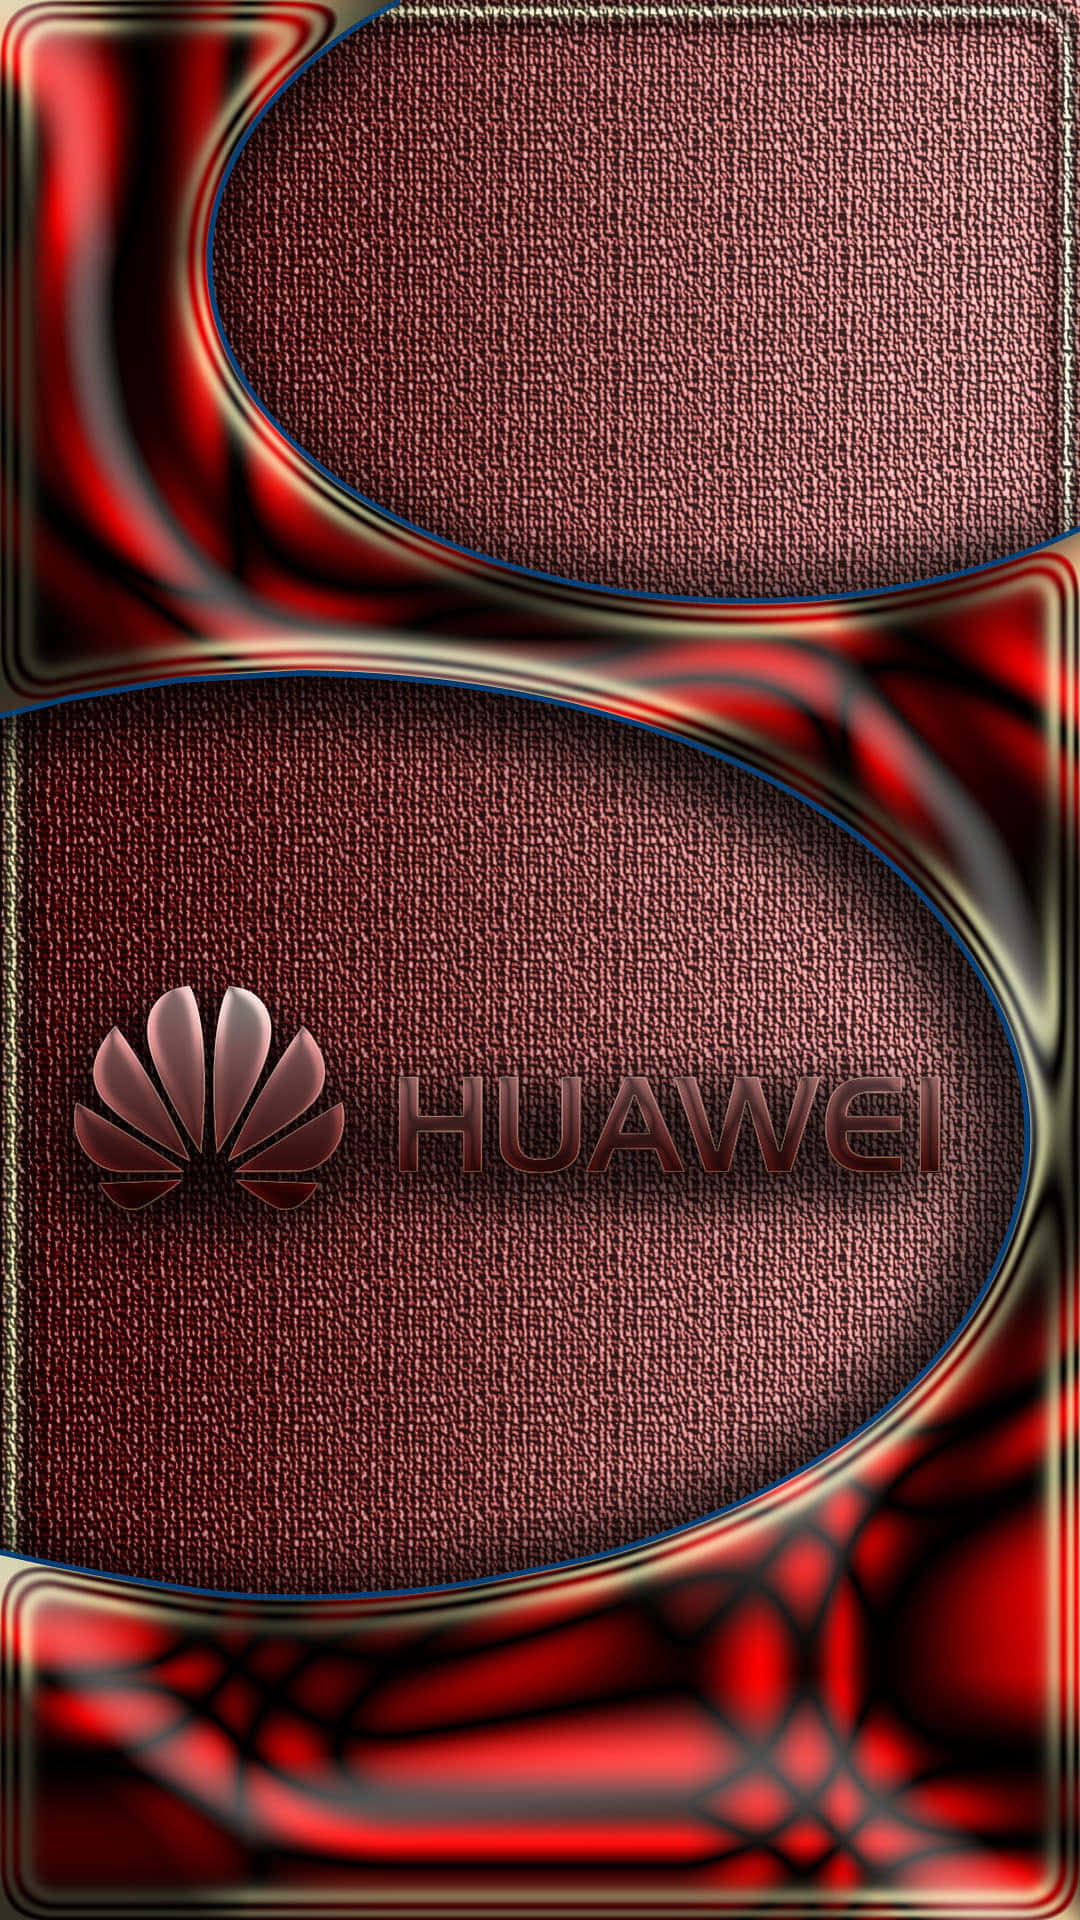 Huaweipresenta La Última Tecnología Imprescindible En Teléfonos Inteligentes.